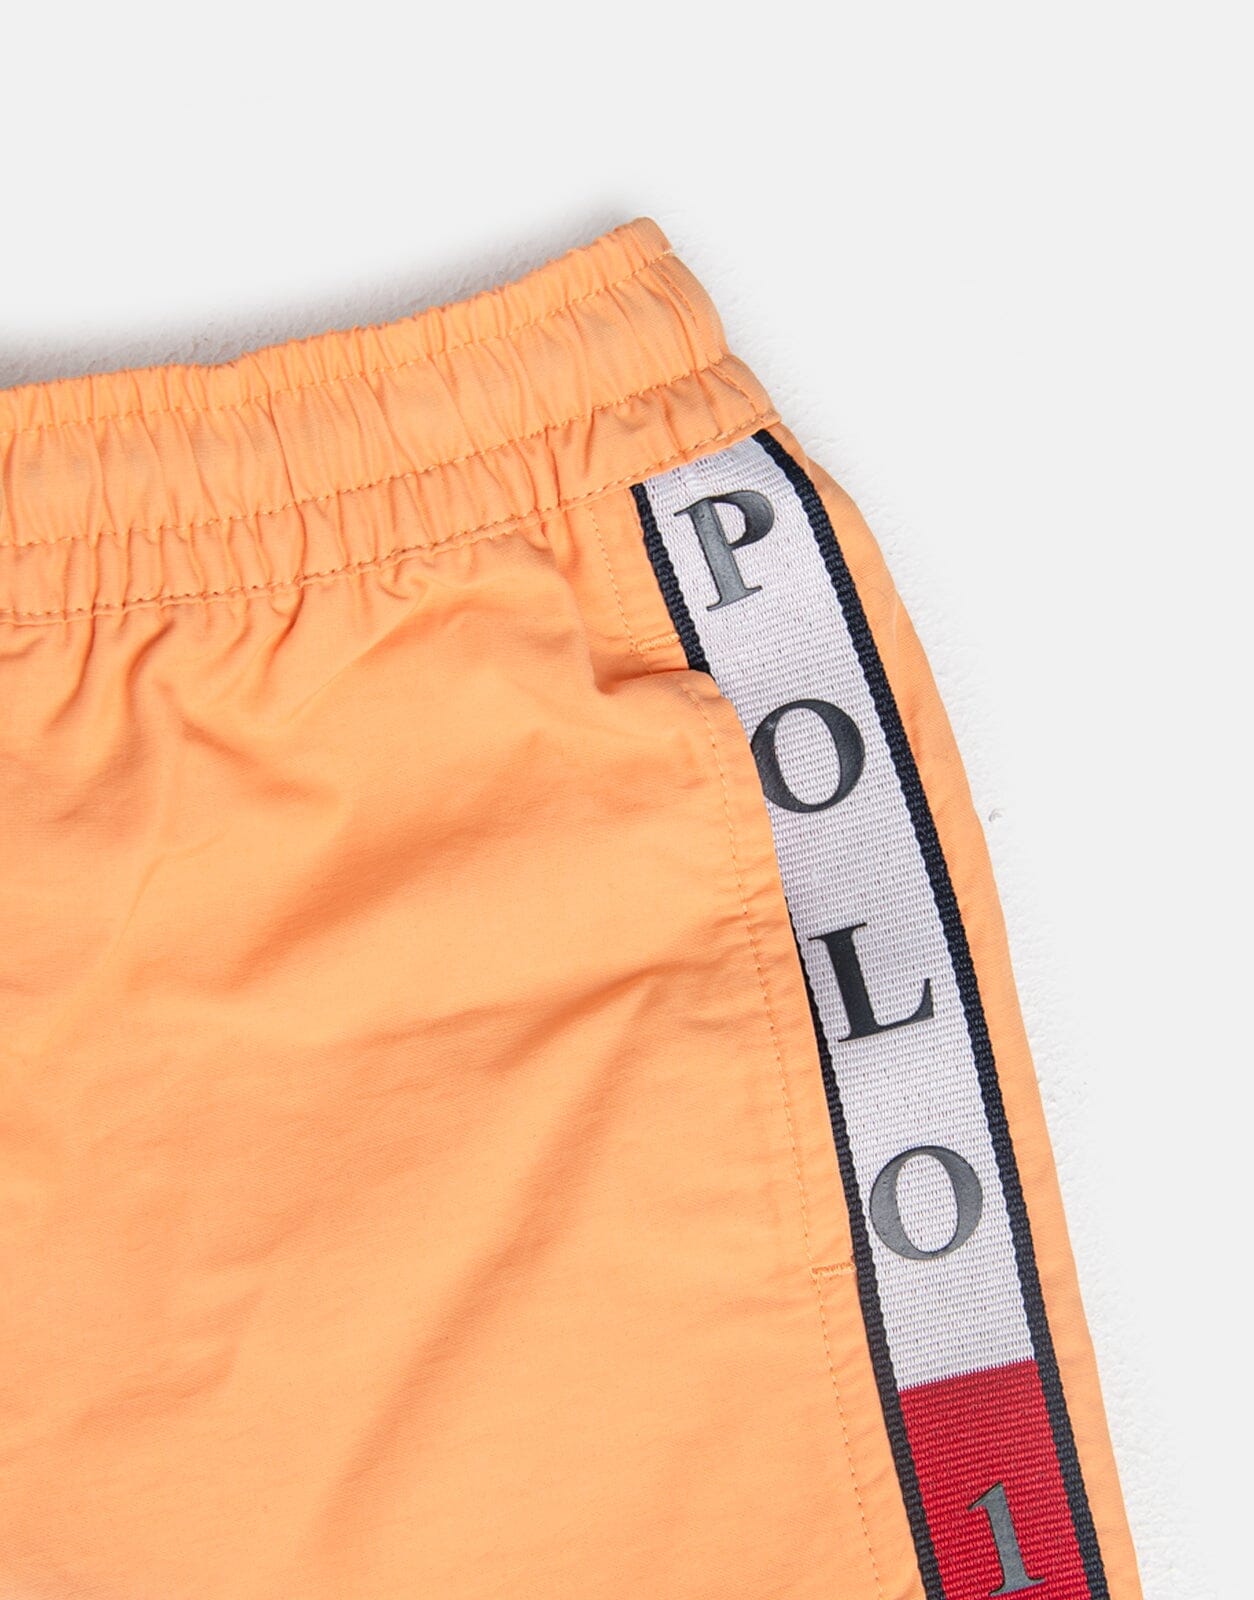 Polo Boys Ayden Cut and Sew Shorts - Subwear